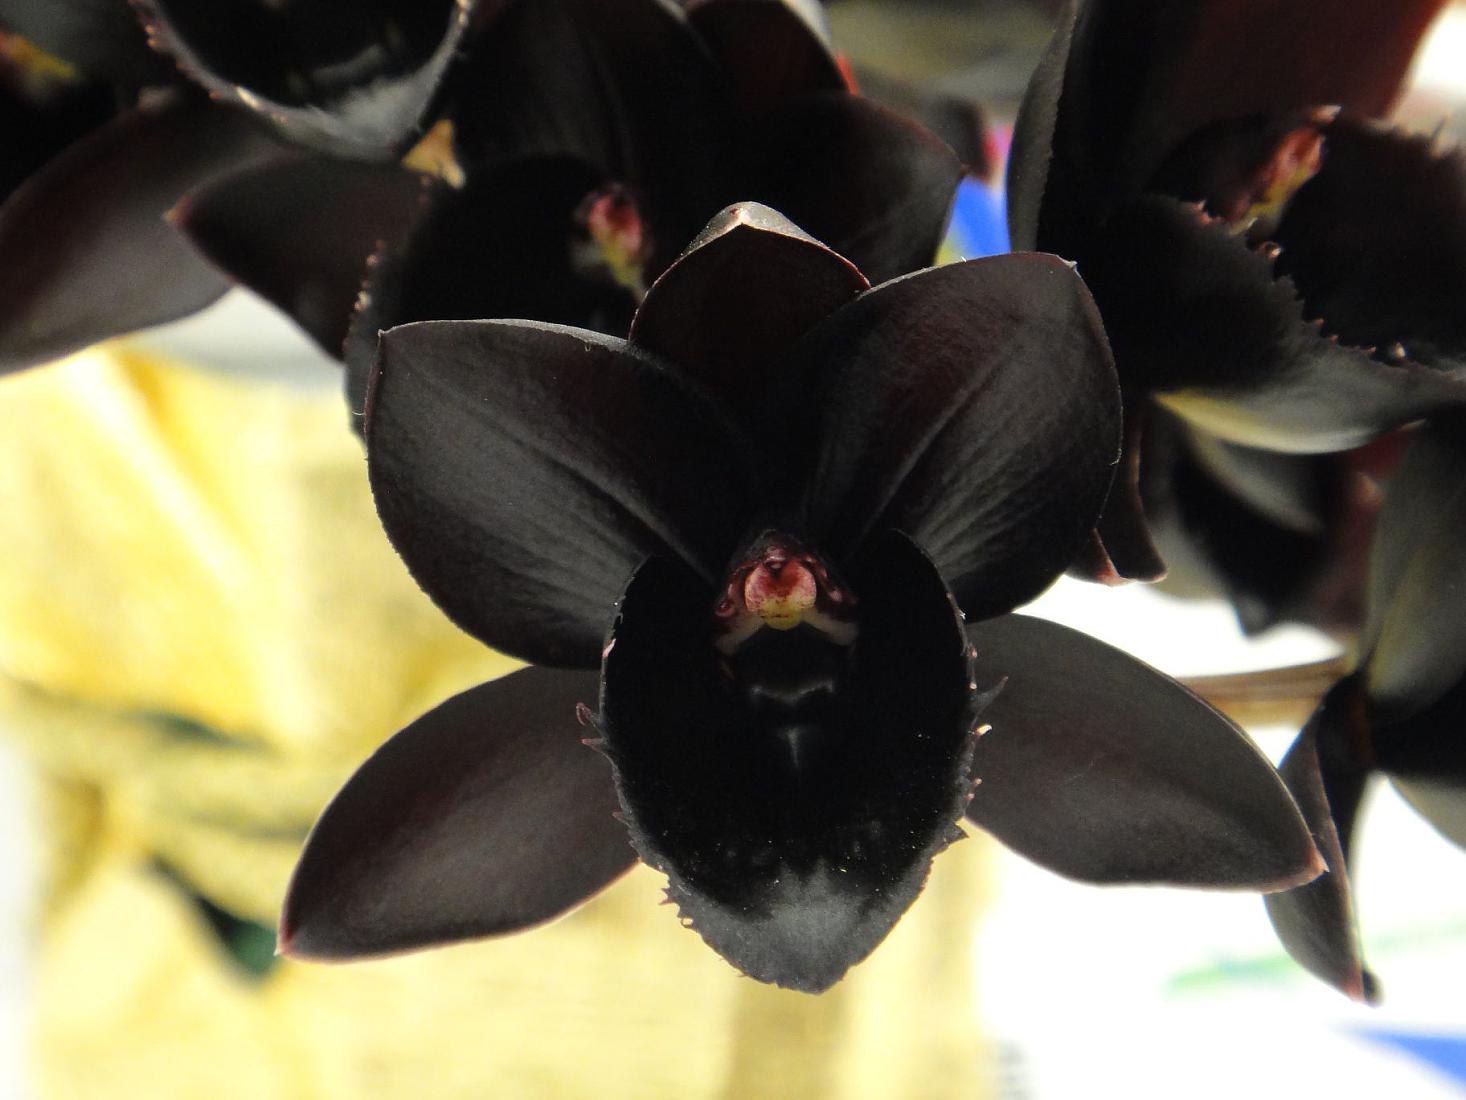 Phalaenopsis - un fiore di orchidea nera, come appare nella foto